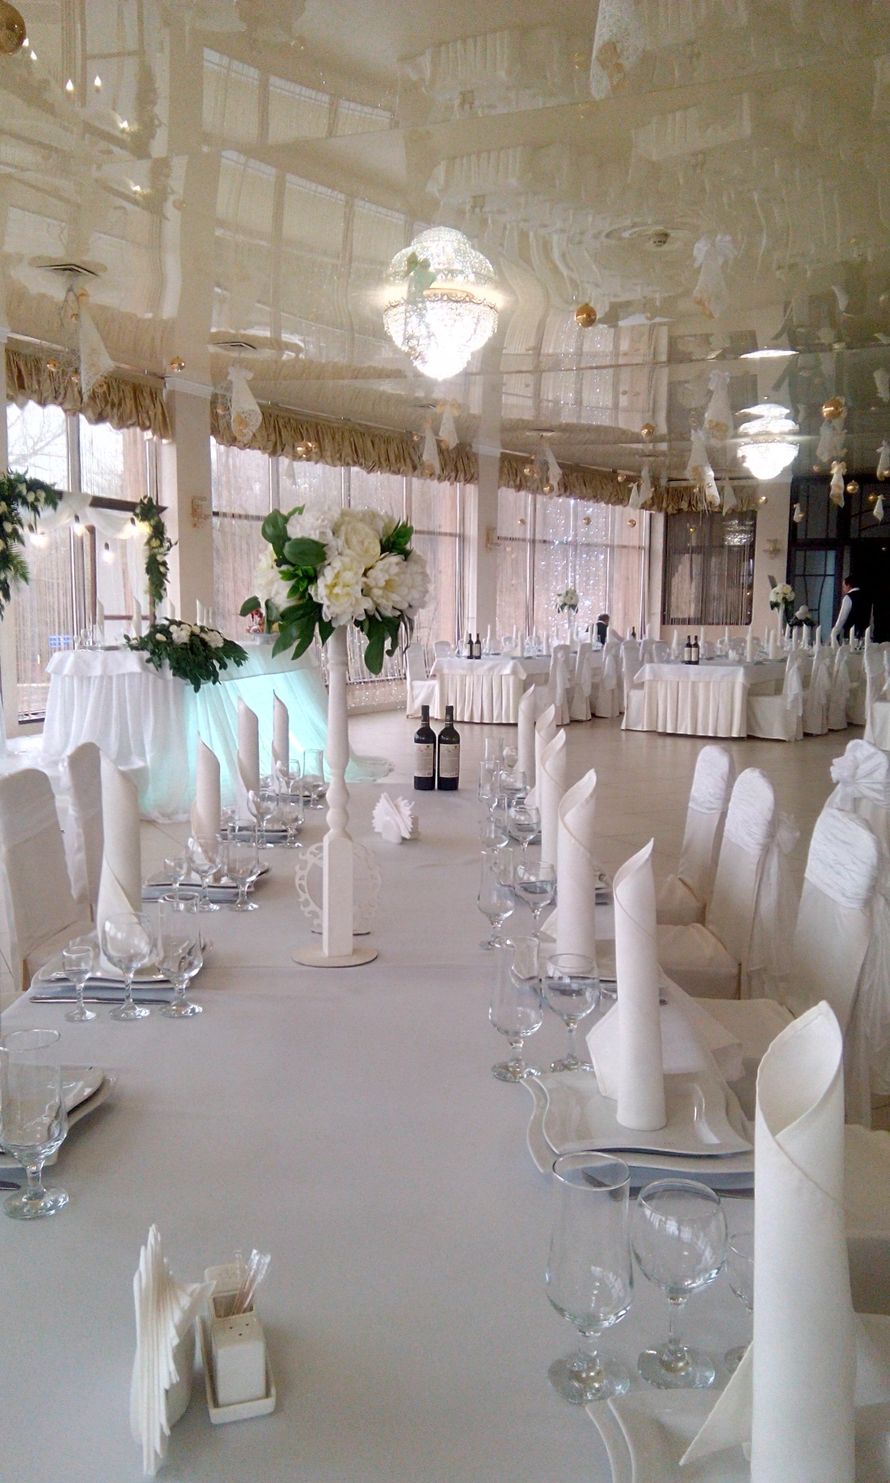 композиции на столы гостей - фото 18321652 Luxury wedding - оформление и декор